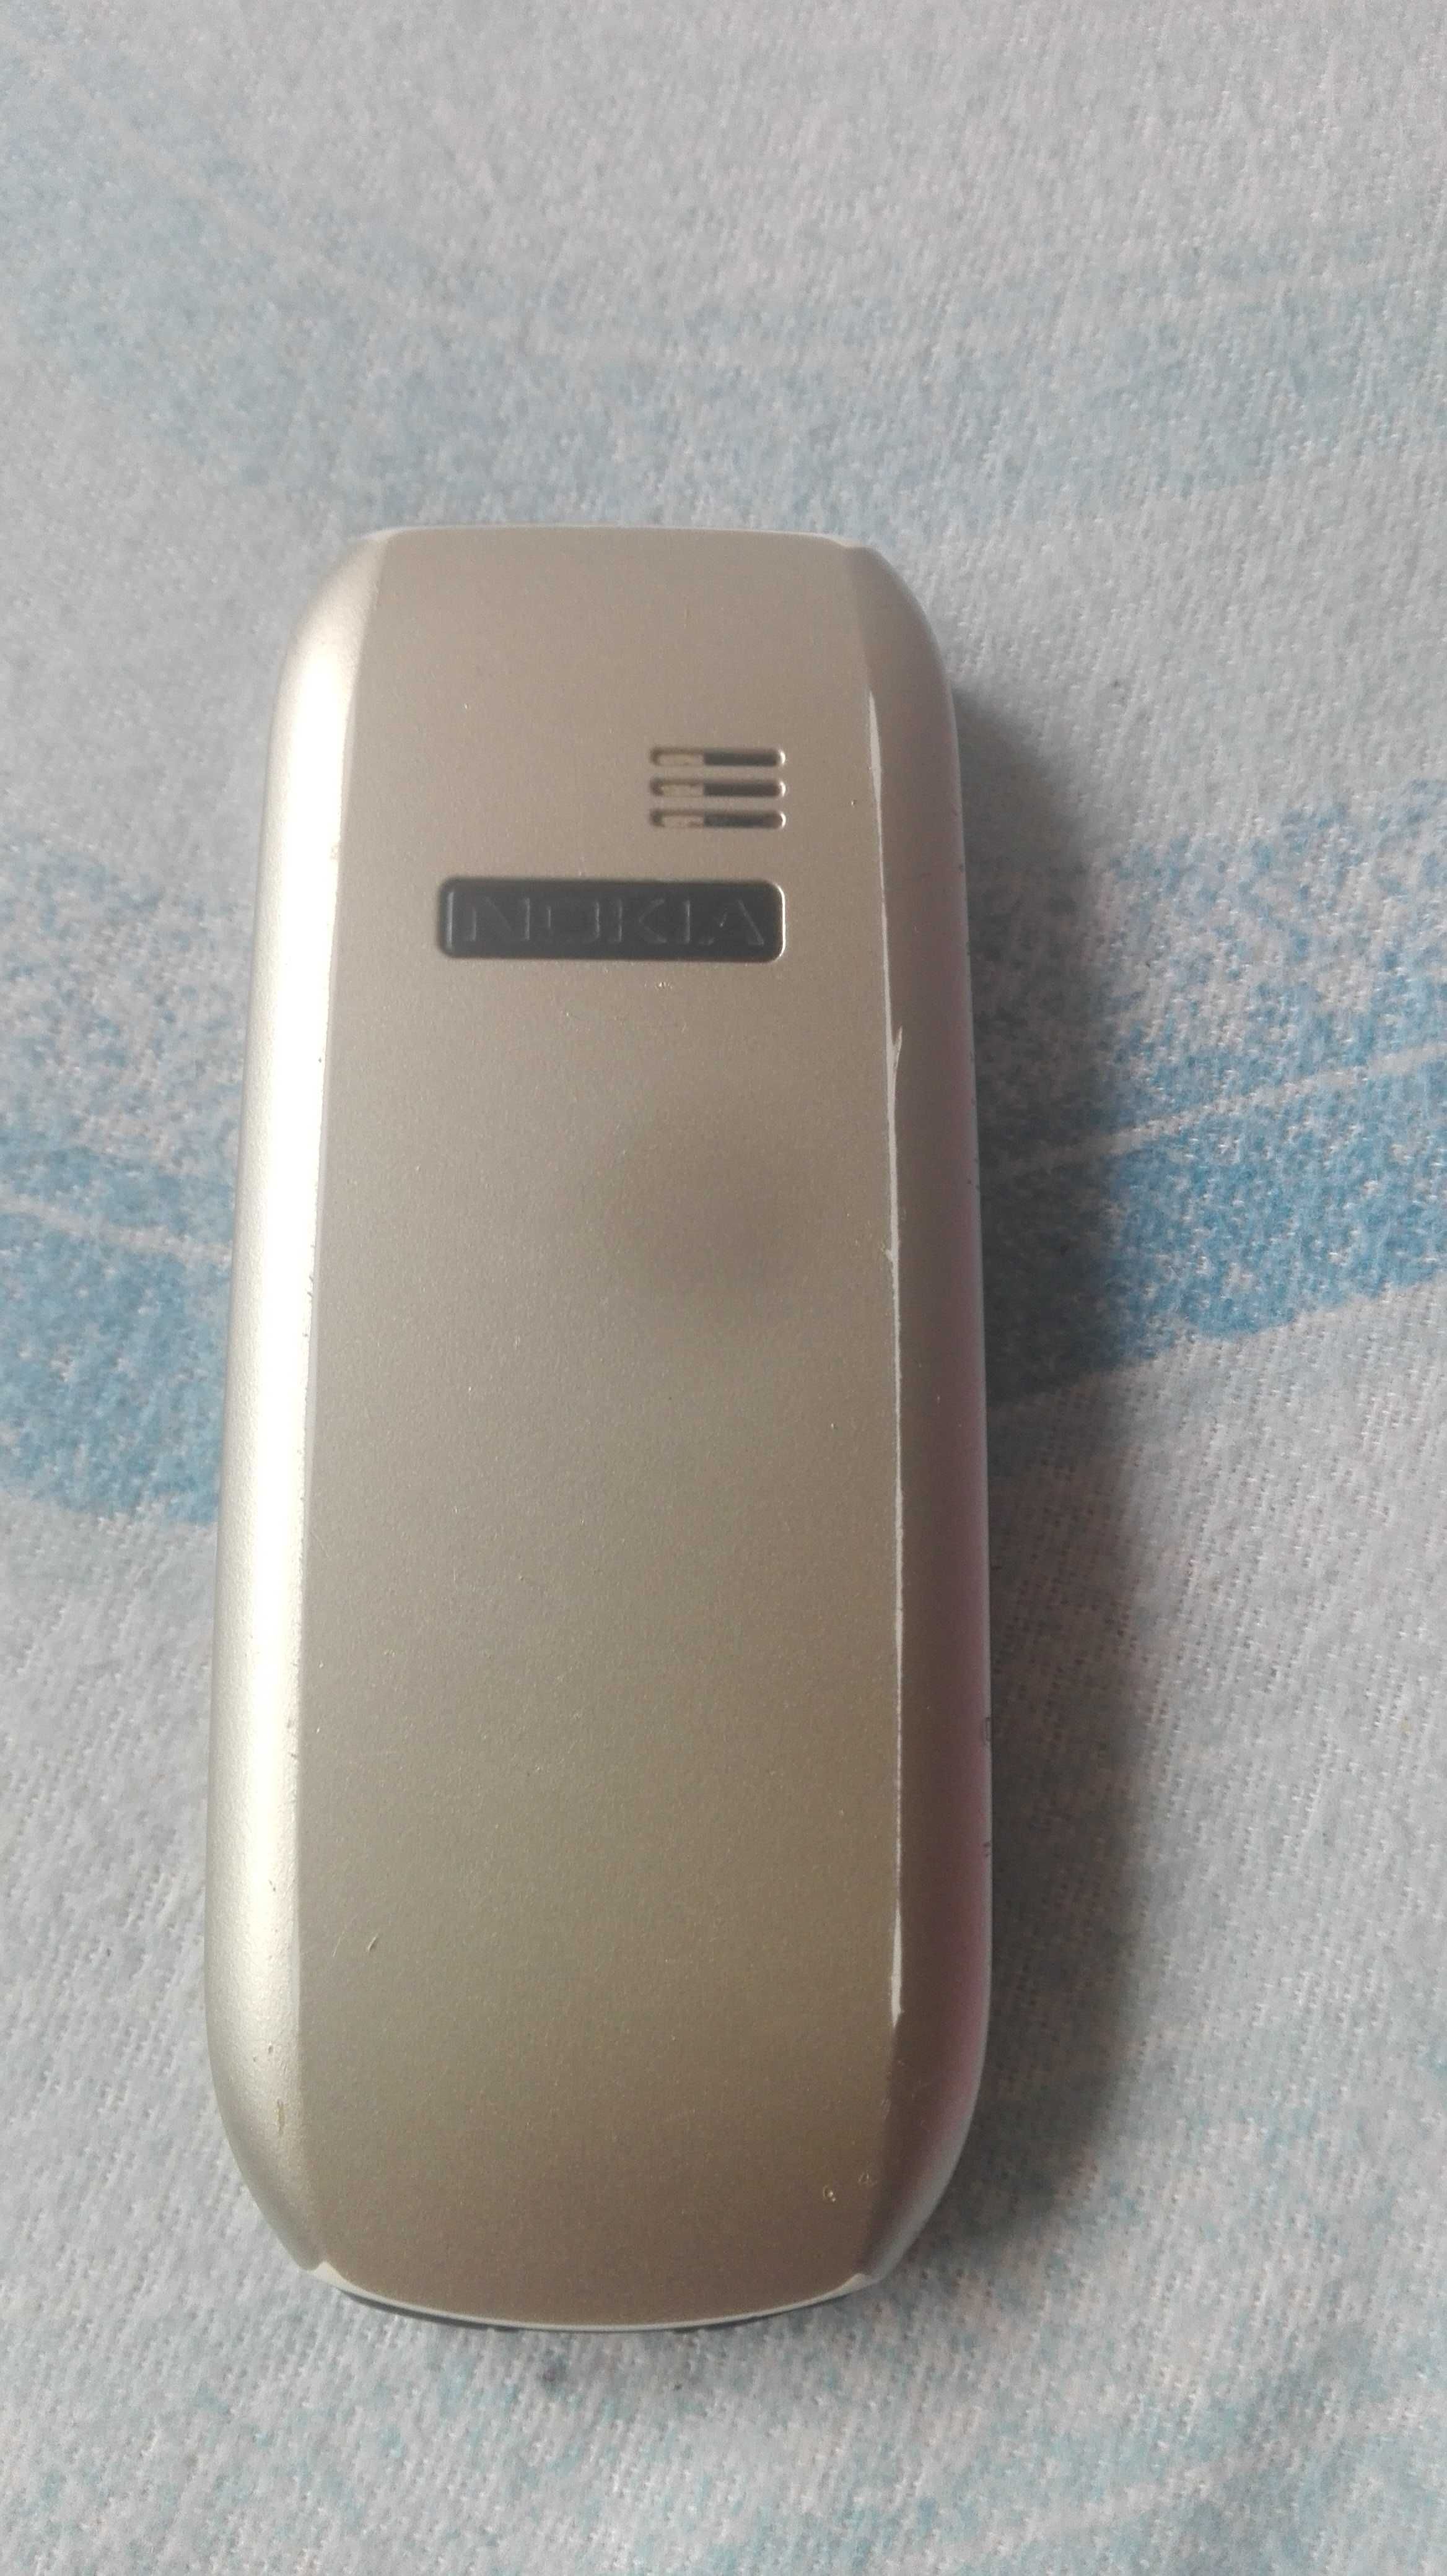 Telefon Nokia 1800 pentru colecție sau folosire perfect funcțional